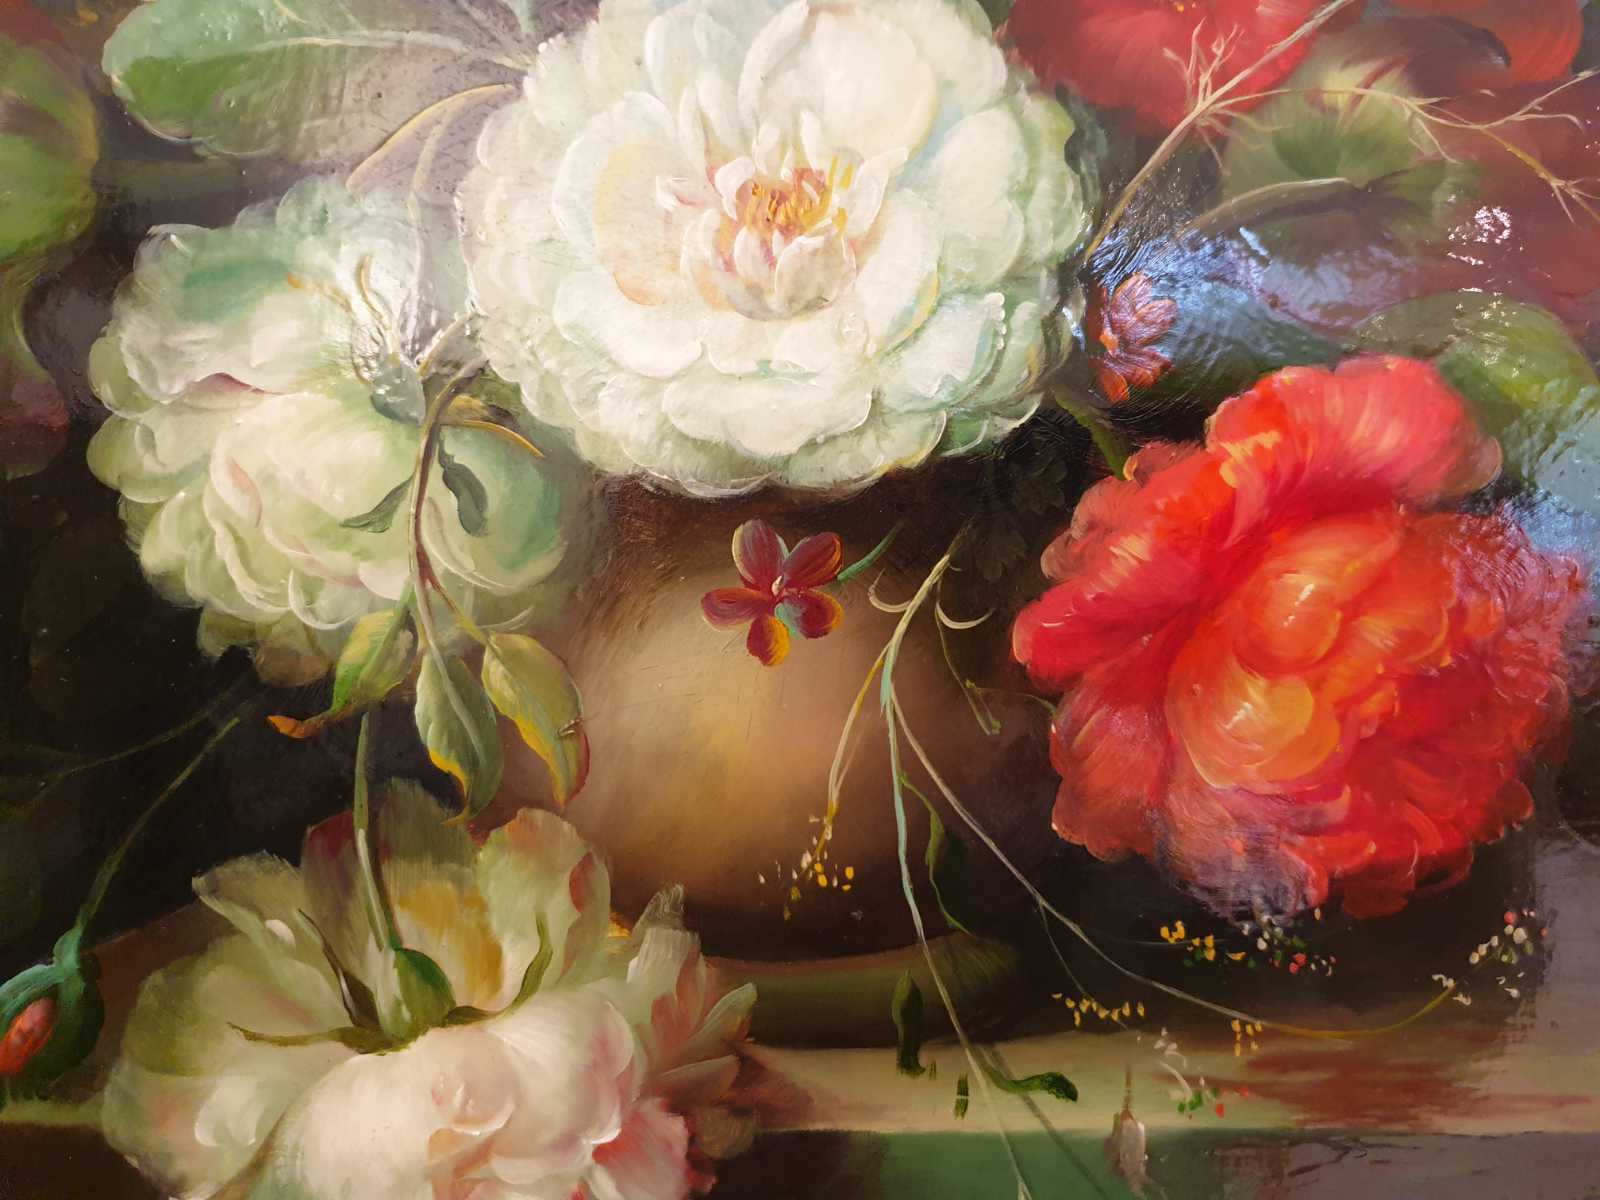 Ölbild des Künstlers Lomberg, zeigt florales Stilleben, Mitte.